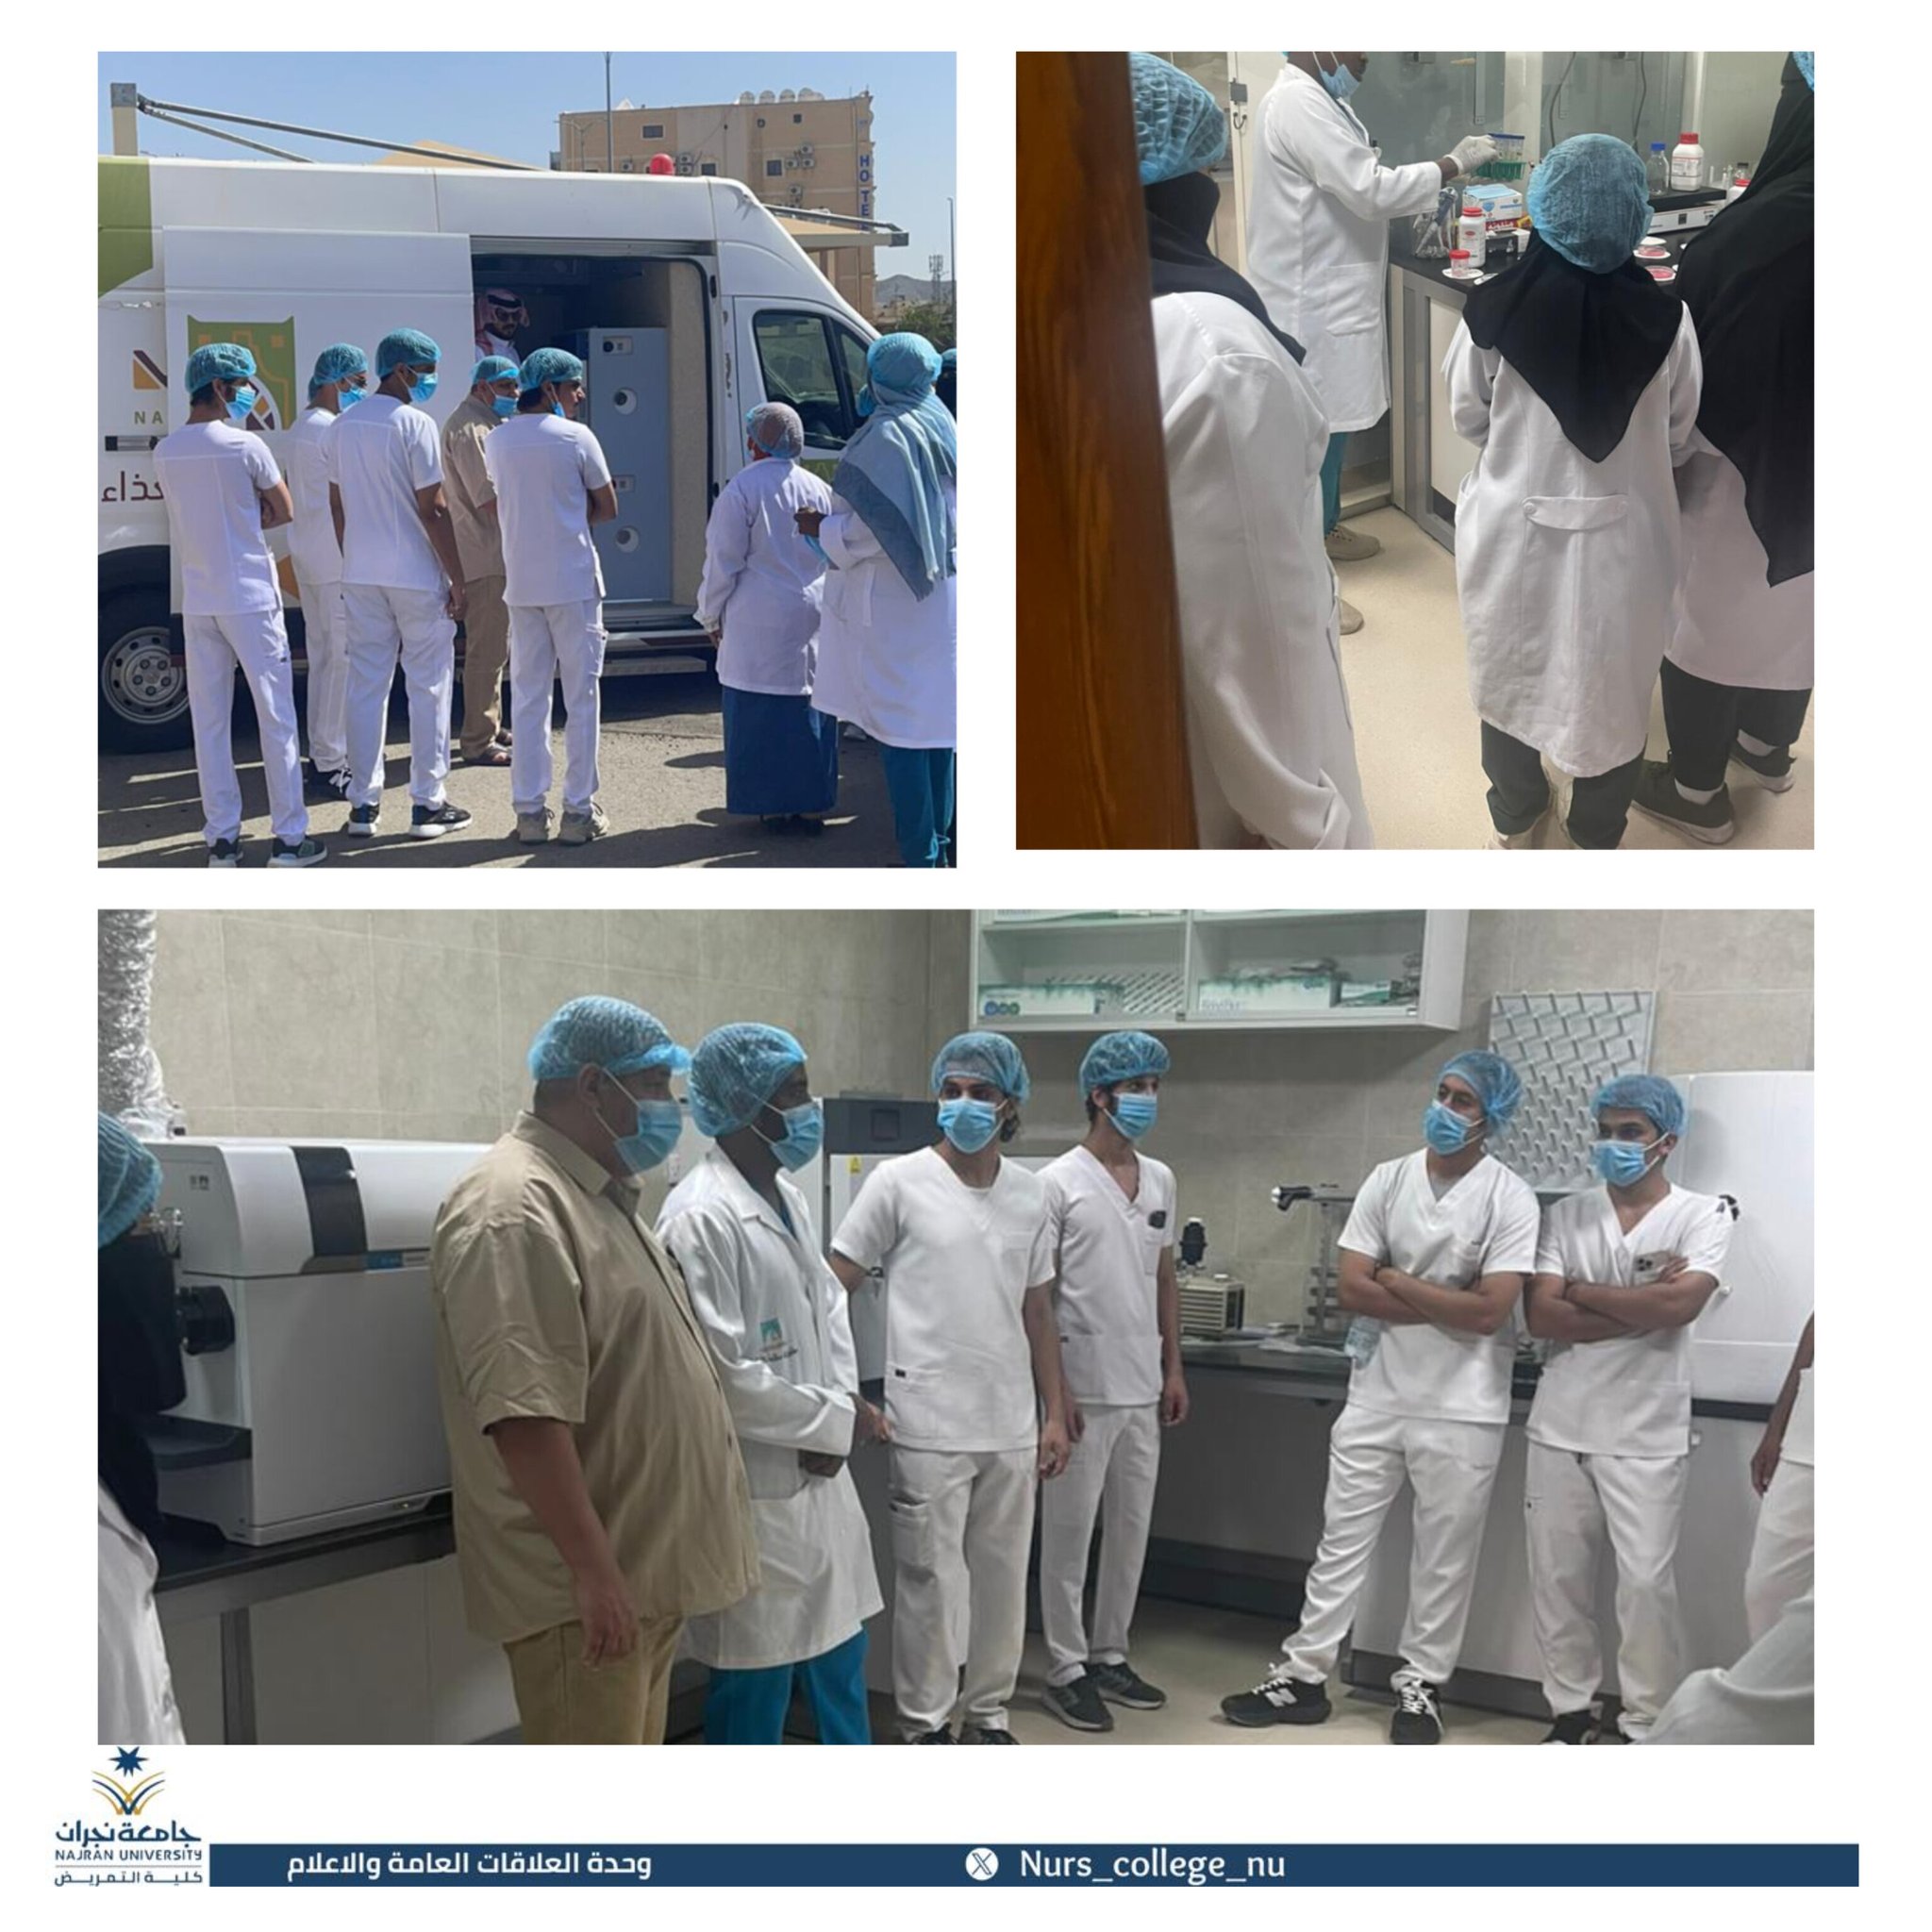 زيارة طلاب كلية التمريض لمختبرات صحة البيئة بنجران